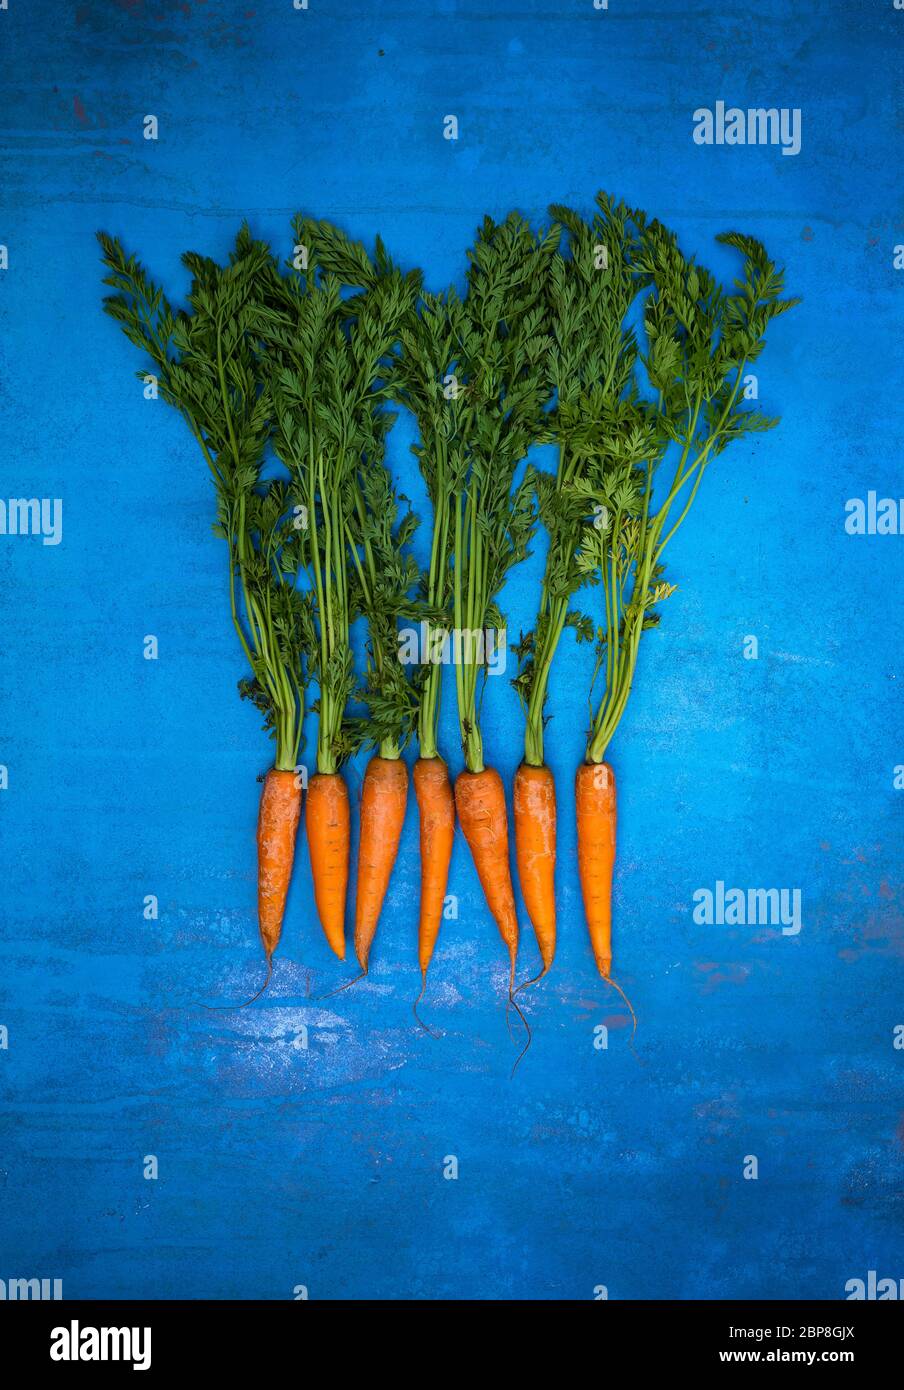 Un mazzo di carote con lunghe code verdi fotografate su uno sfondo blu. Foto Stock